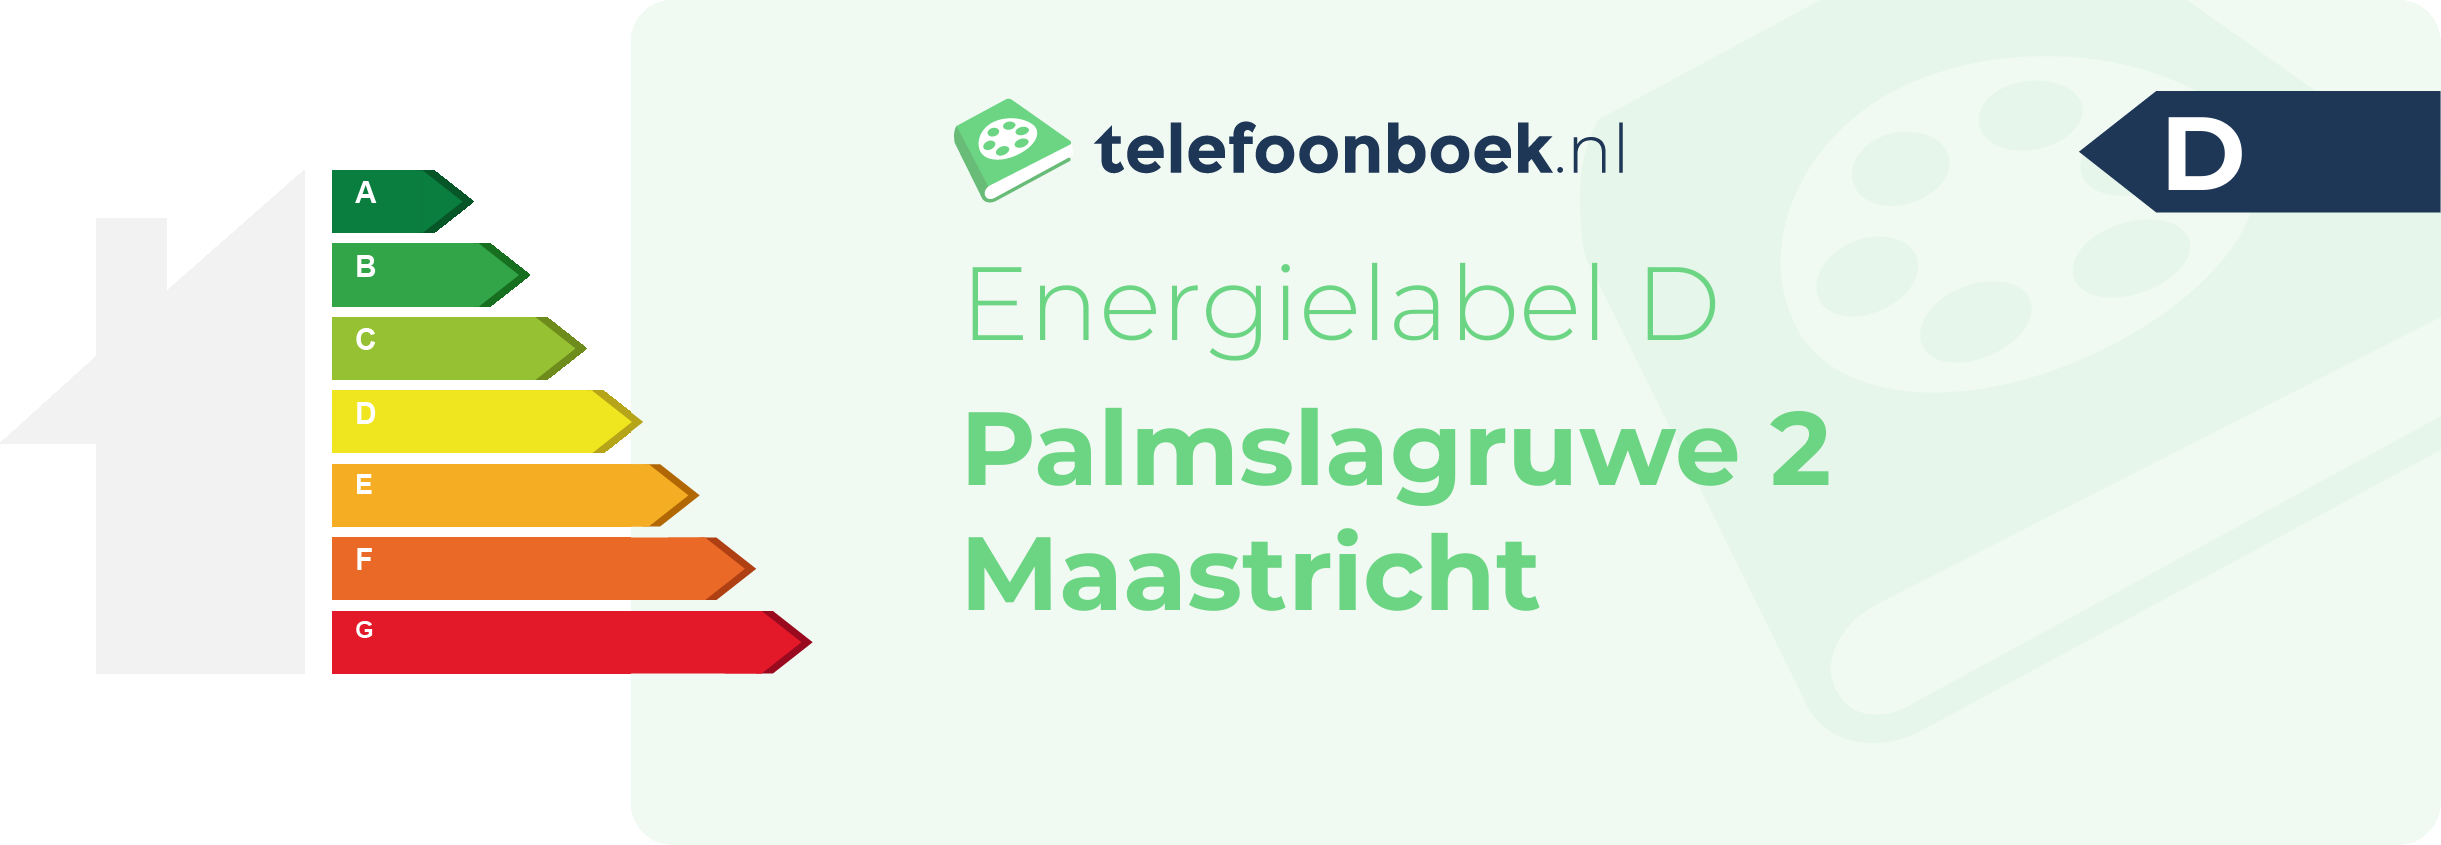 Energielabel Palmslagruwe 2 Maastricht